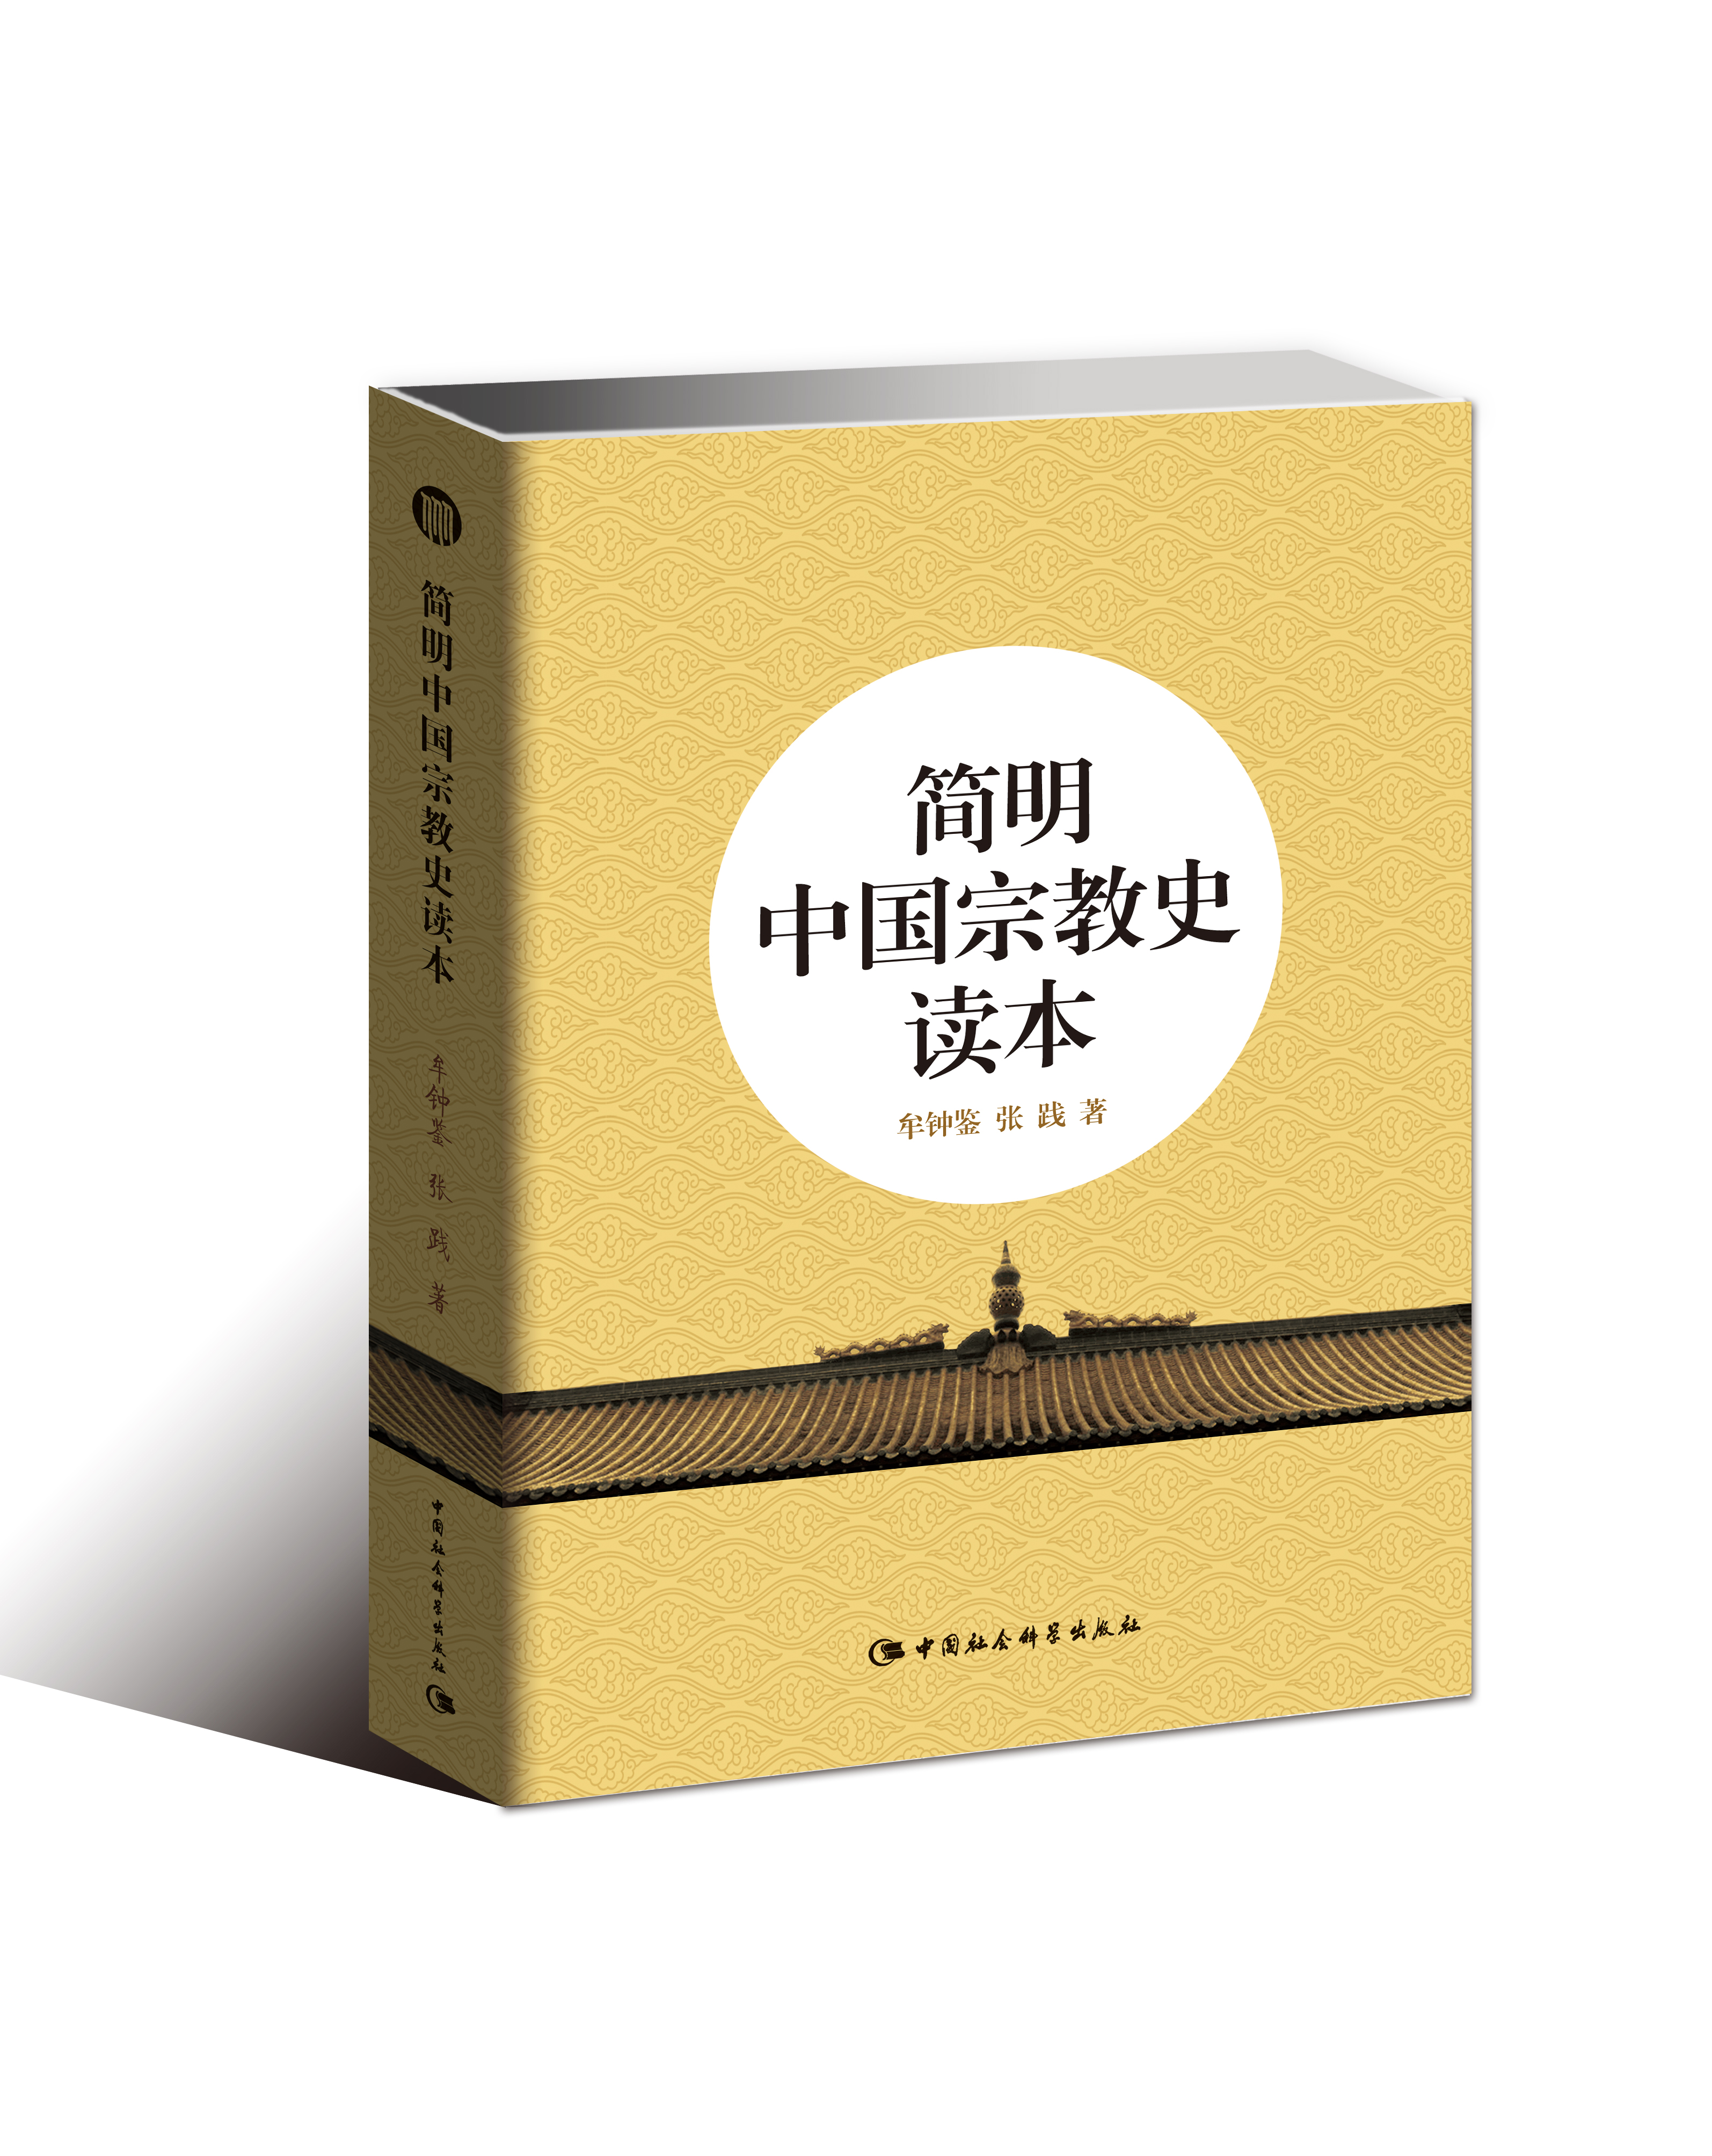 簡明中國宗教史讀本